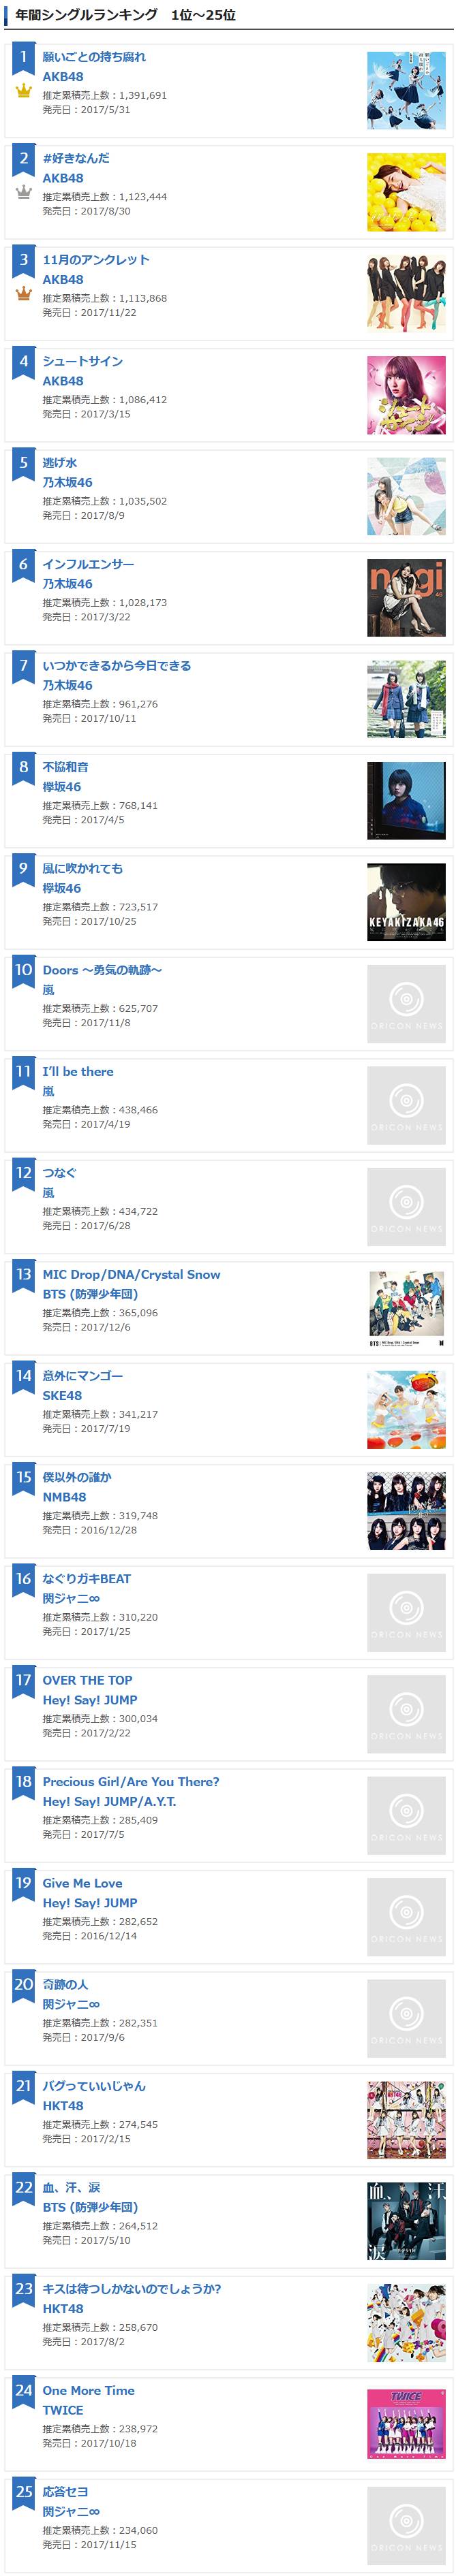 일본 오리콘 2017년 싱글 연간판매 TOP 25 | 인스티즈